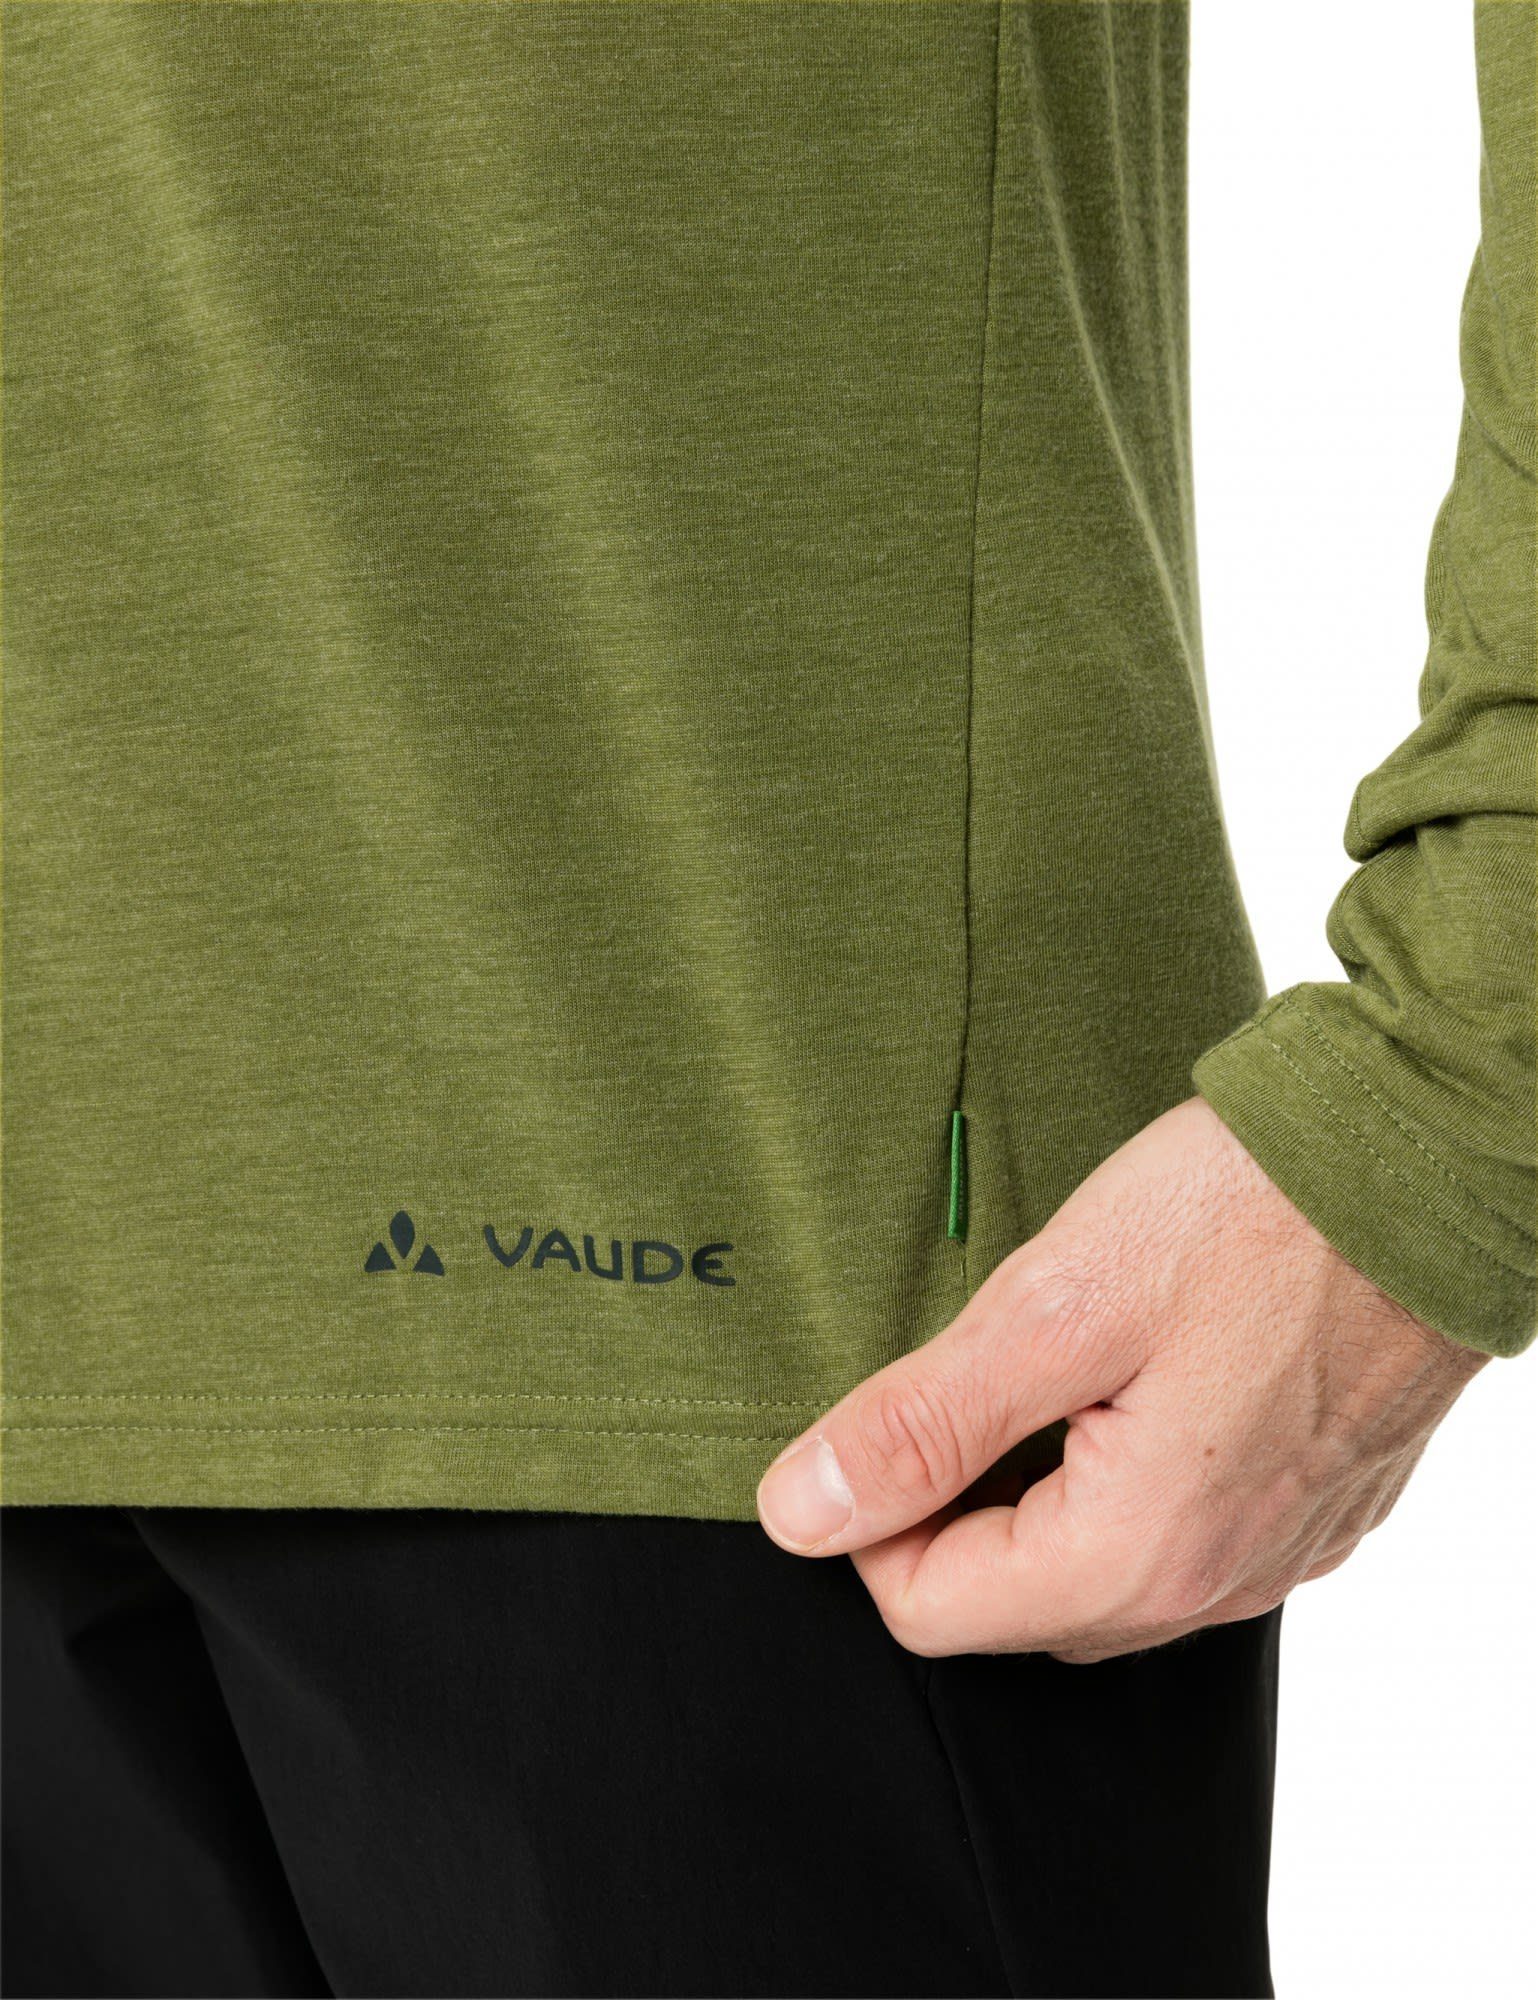 Vaude Rosemoor Iii Avocado VAUDE Mens Long-sleeve Herren T-shirt Langarmshirt